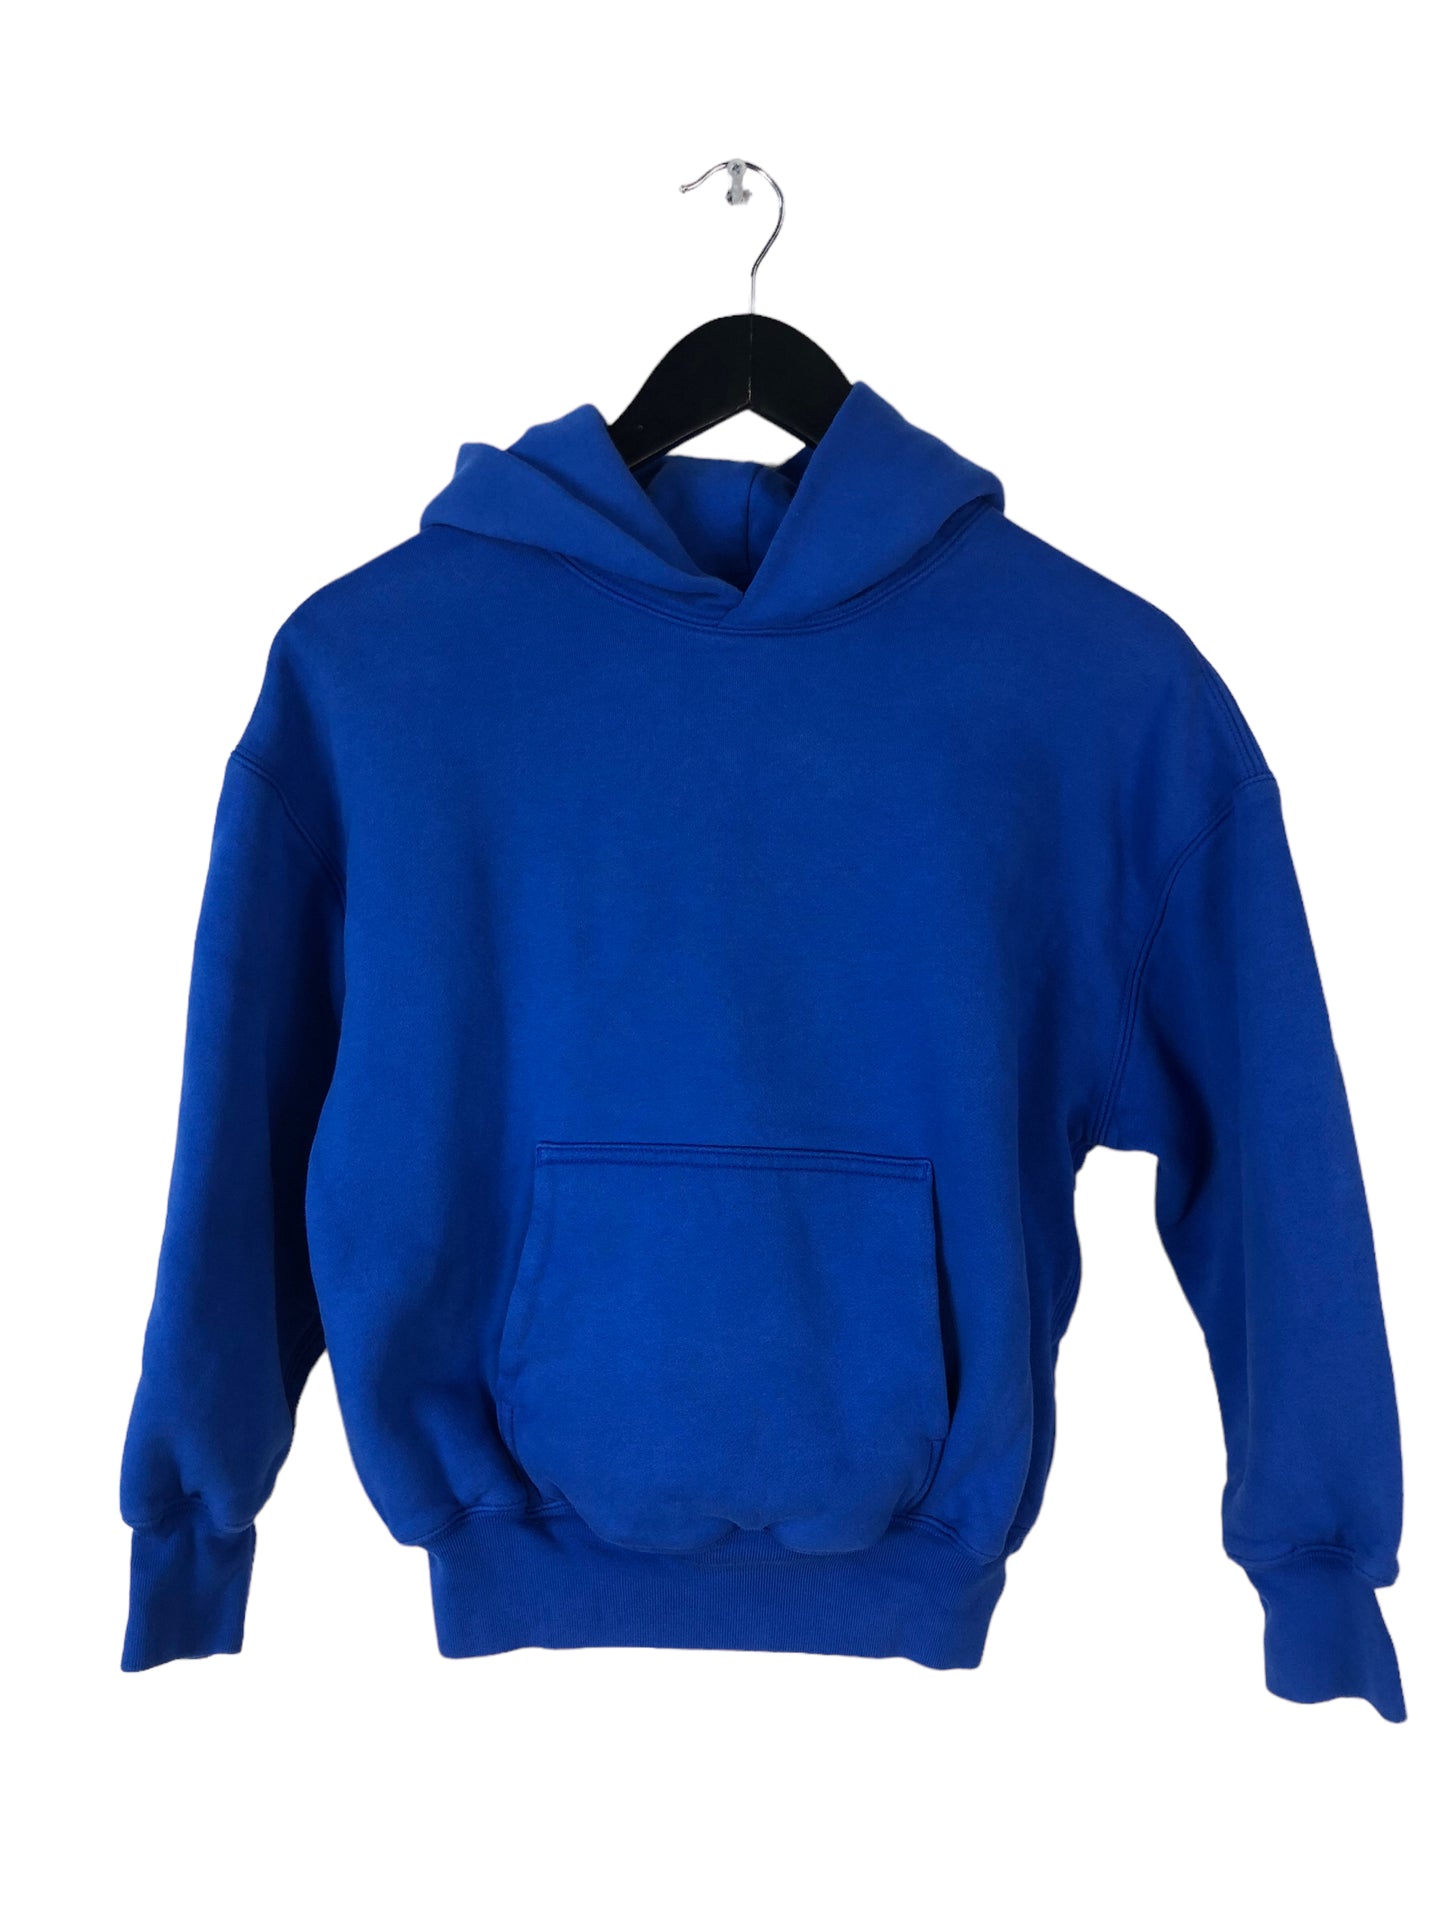 YZY Blue Hooded Sweatshirt Sz XS